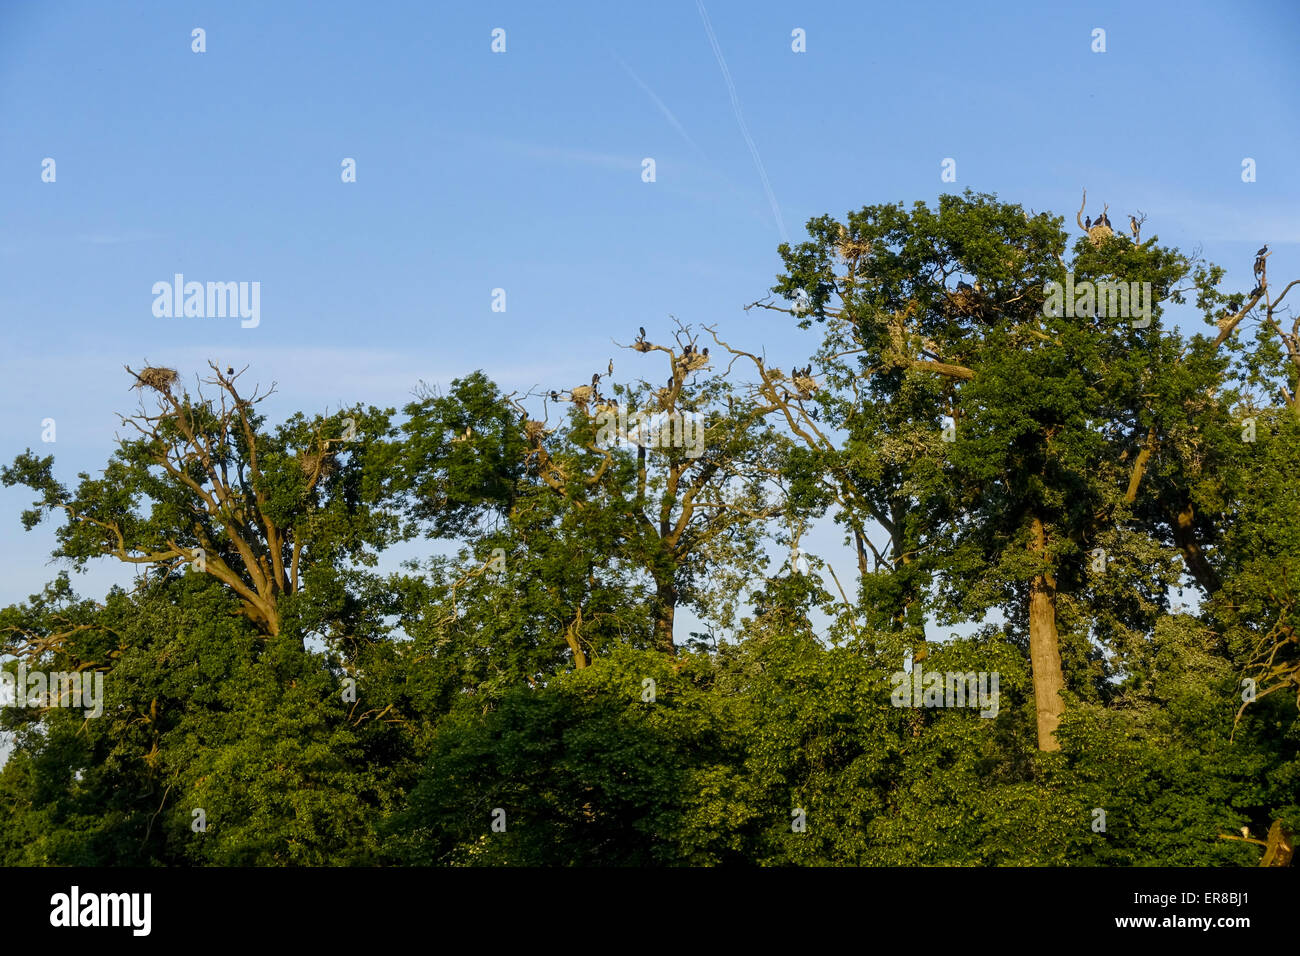 Vogelkolonie, Landschaftsgarten, UNESCO Weltkulturerbe, Lednice, Kreis Breclav Südmähren, Tschechien Foto Stock